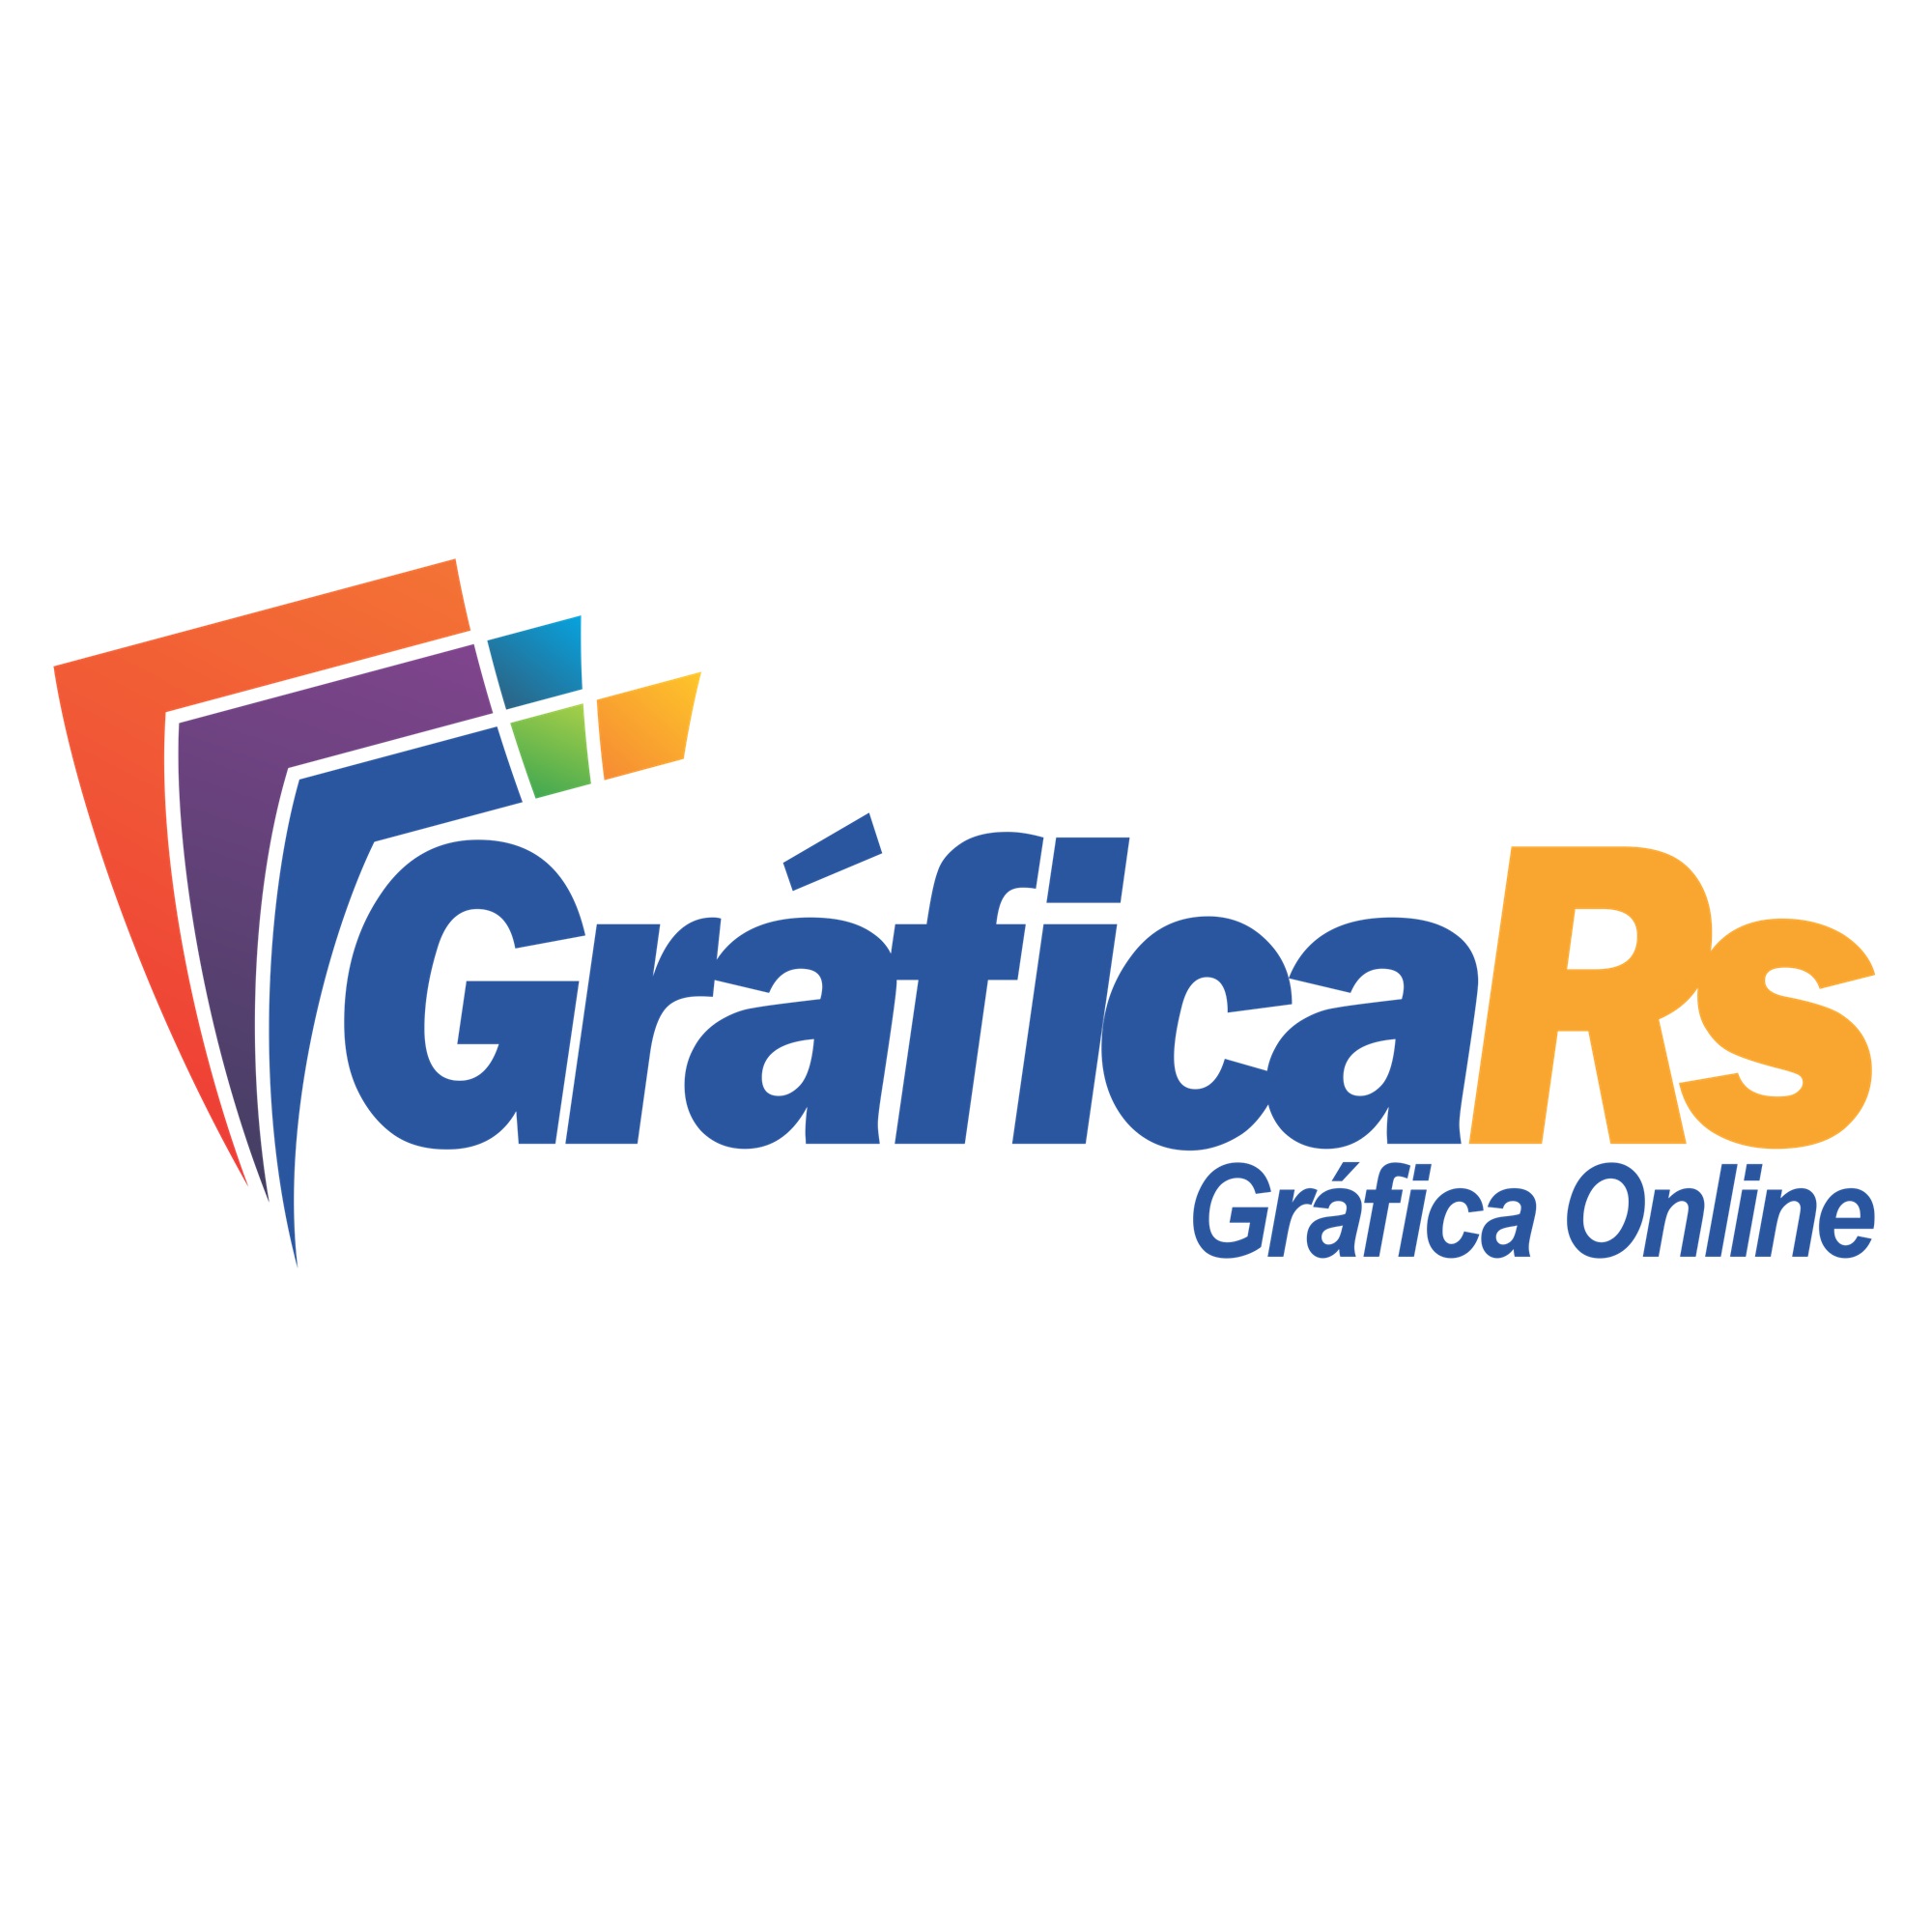 GRÁFICA RS - São Paulo, SP